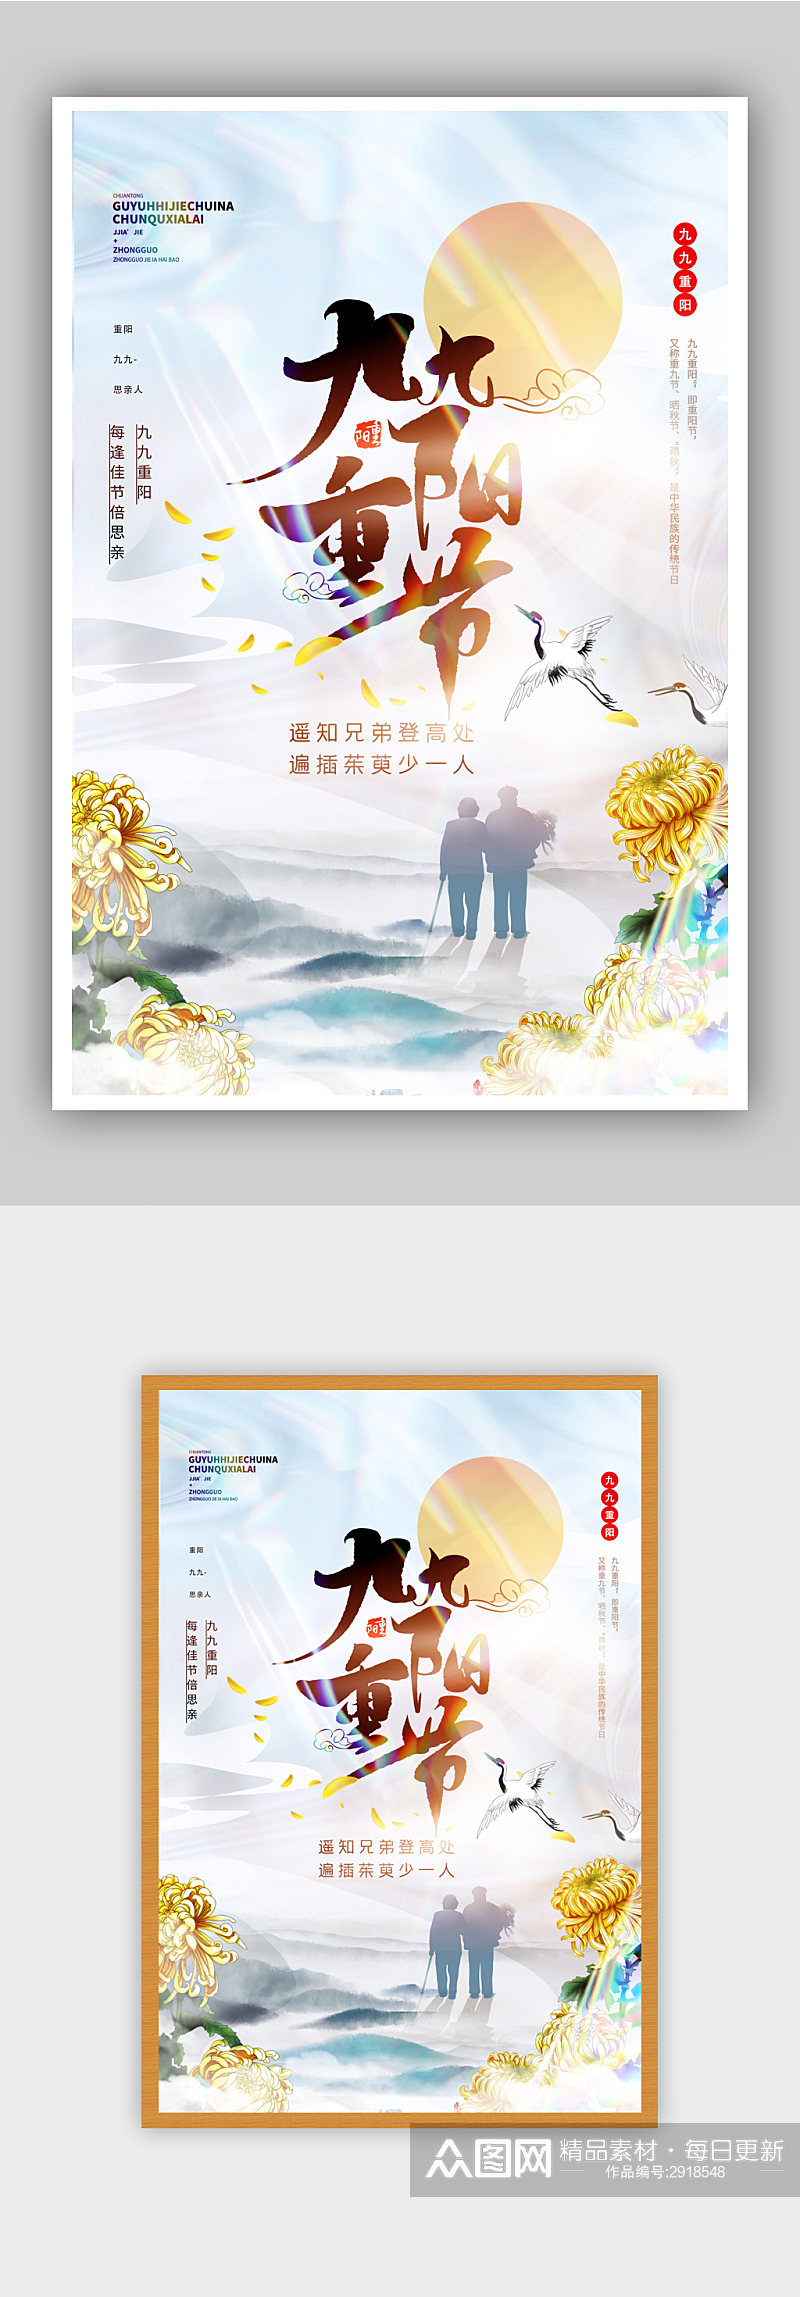 九九重阳节中国风酸性宣传海报素材